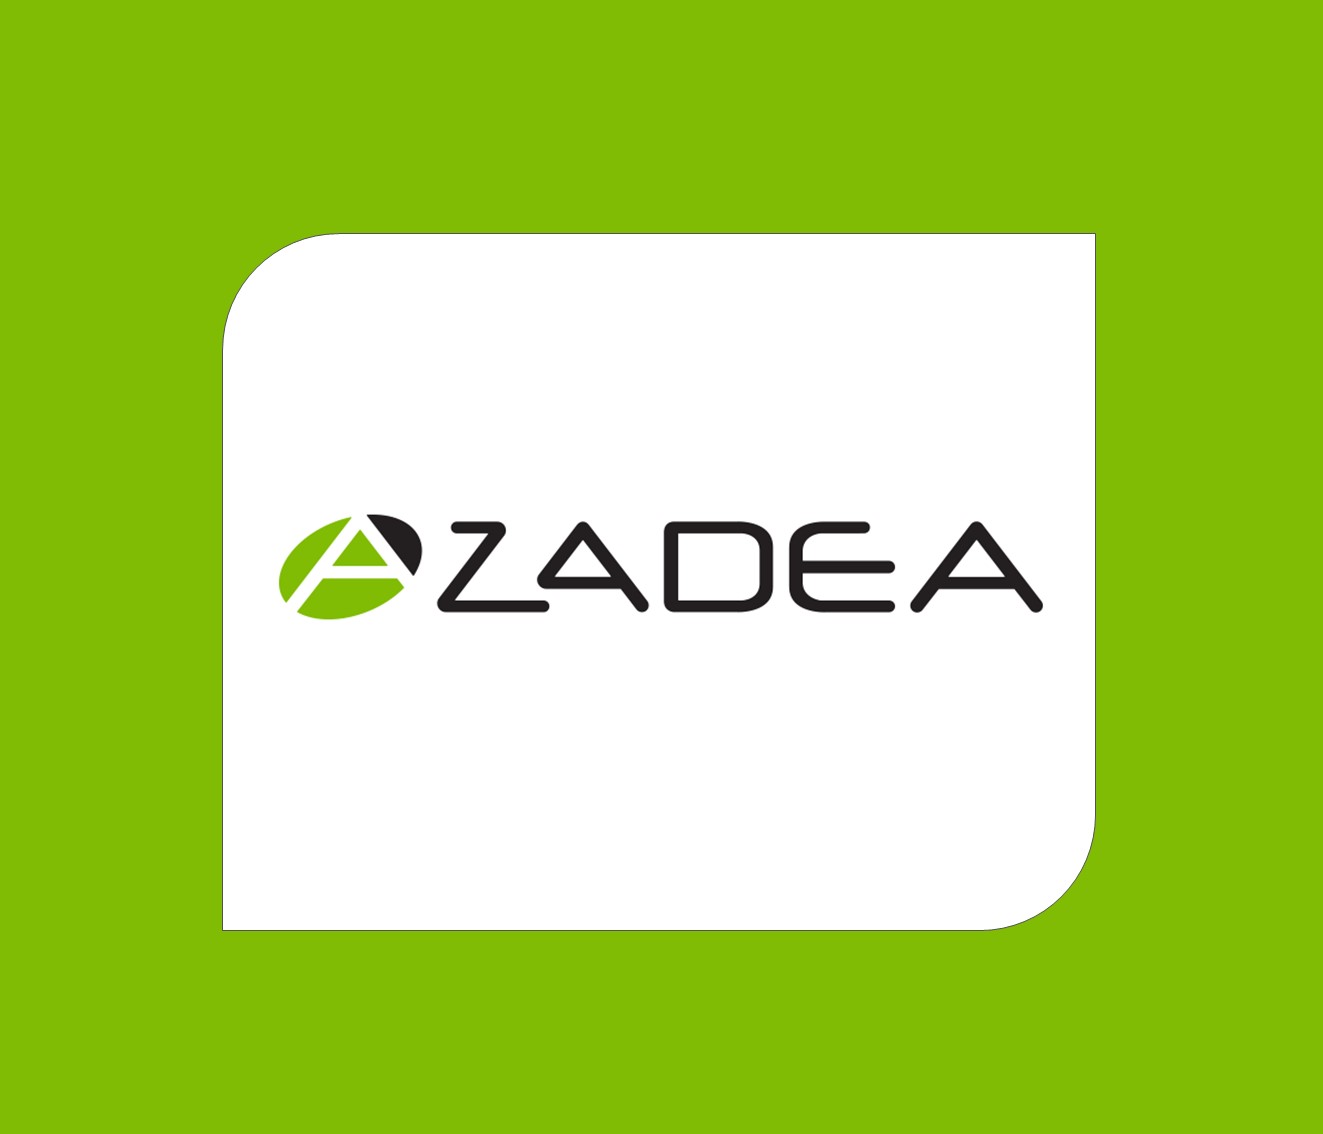 Azadea Jobs